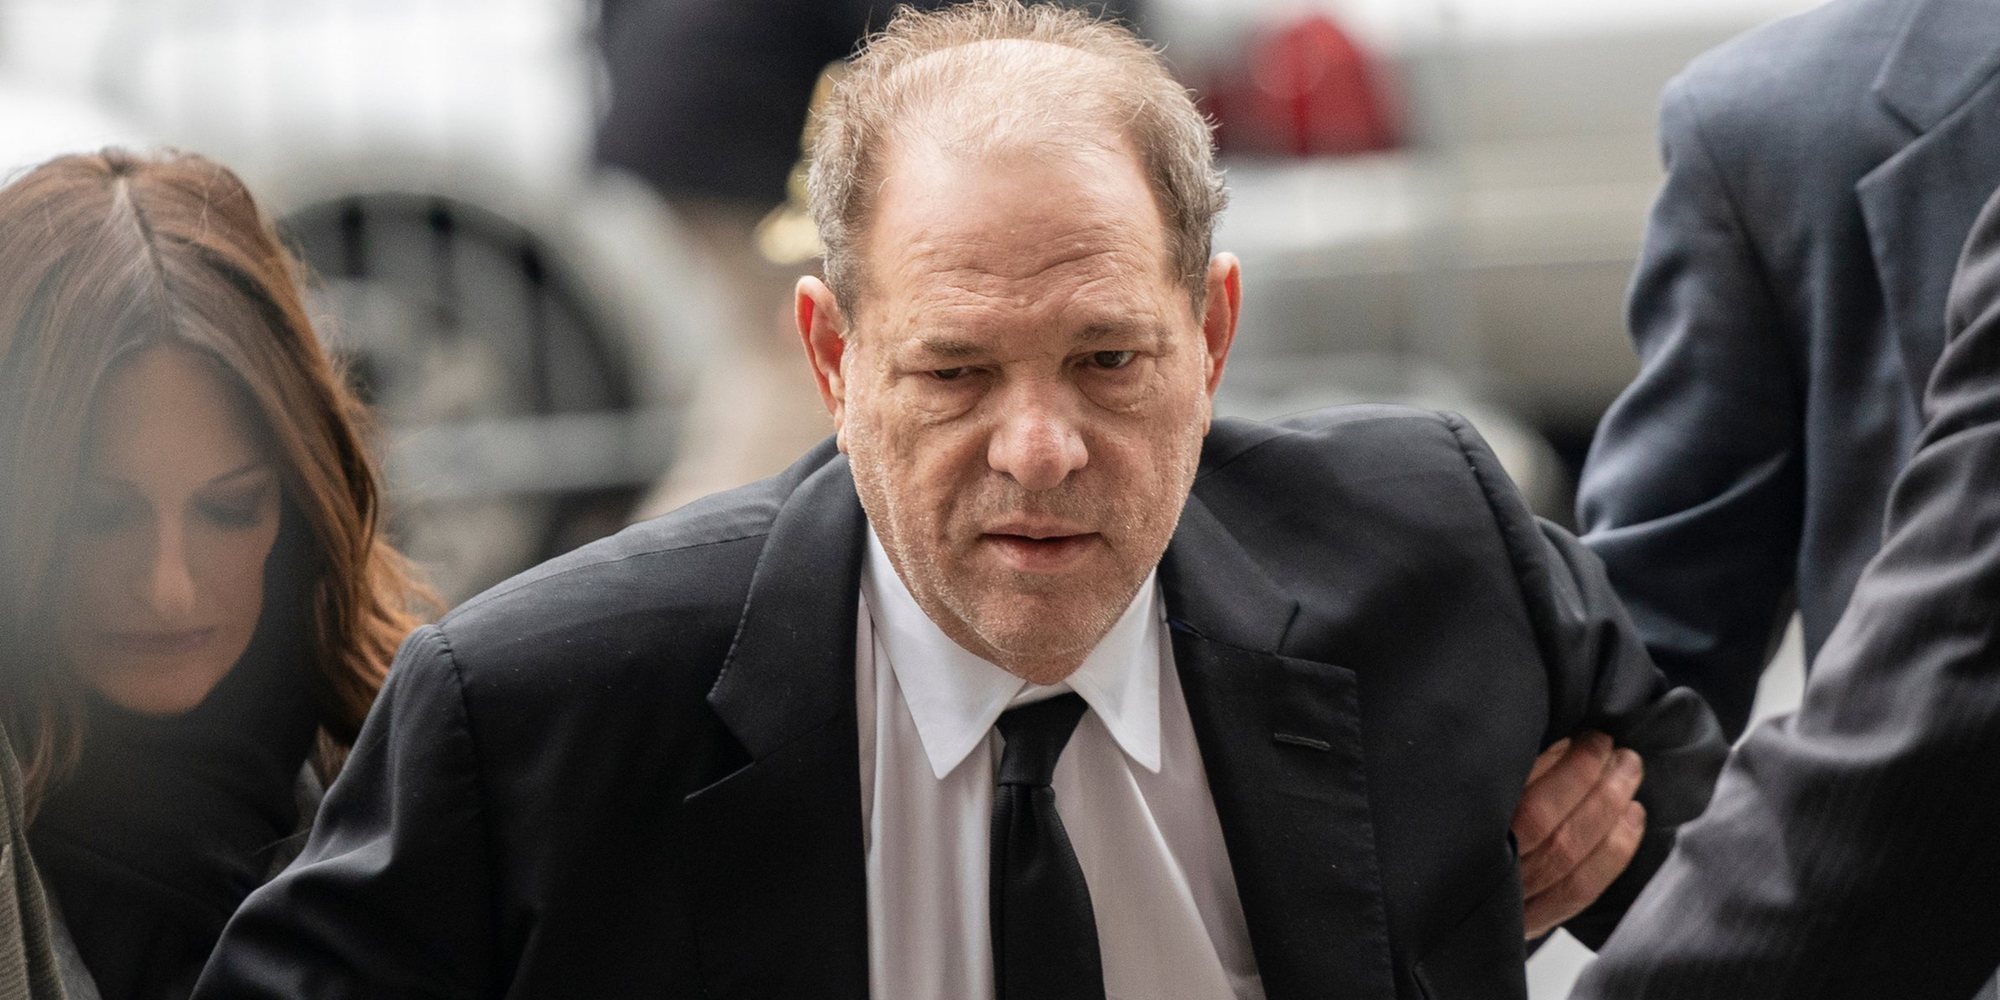 El juicio contra Weinstein podría terminar antes de tiempo tras la declaración de los testigos de la defensa